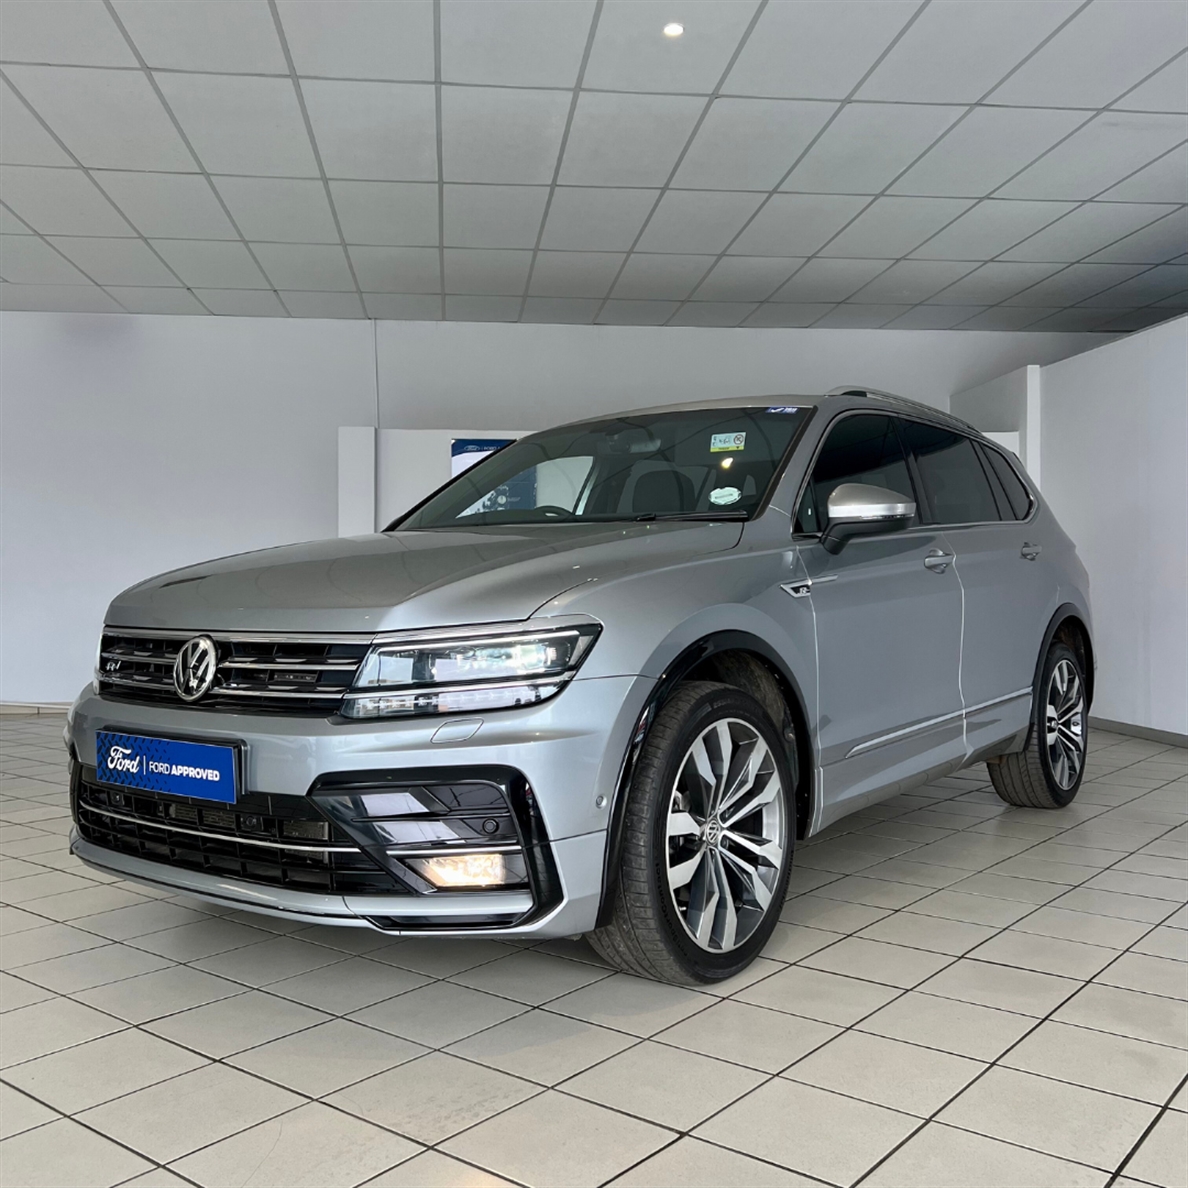 2021 Volkswagen (VW) Tiguan Allspace 2.0 TSi Highline 4 Motion DSG (162 kW)